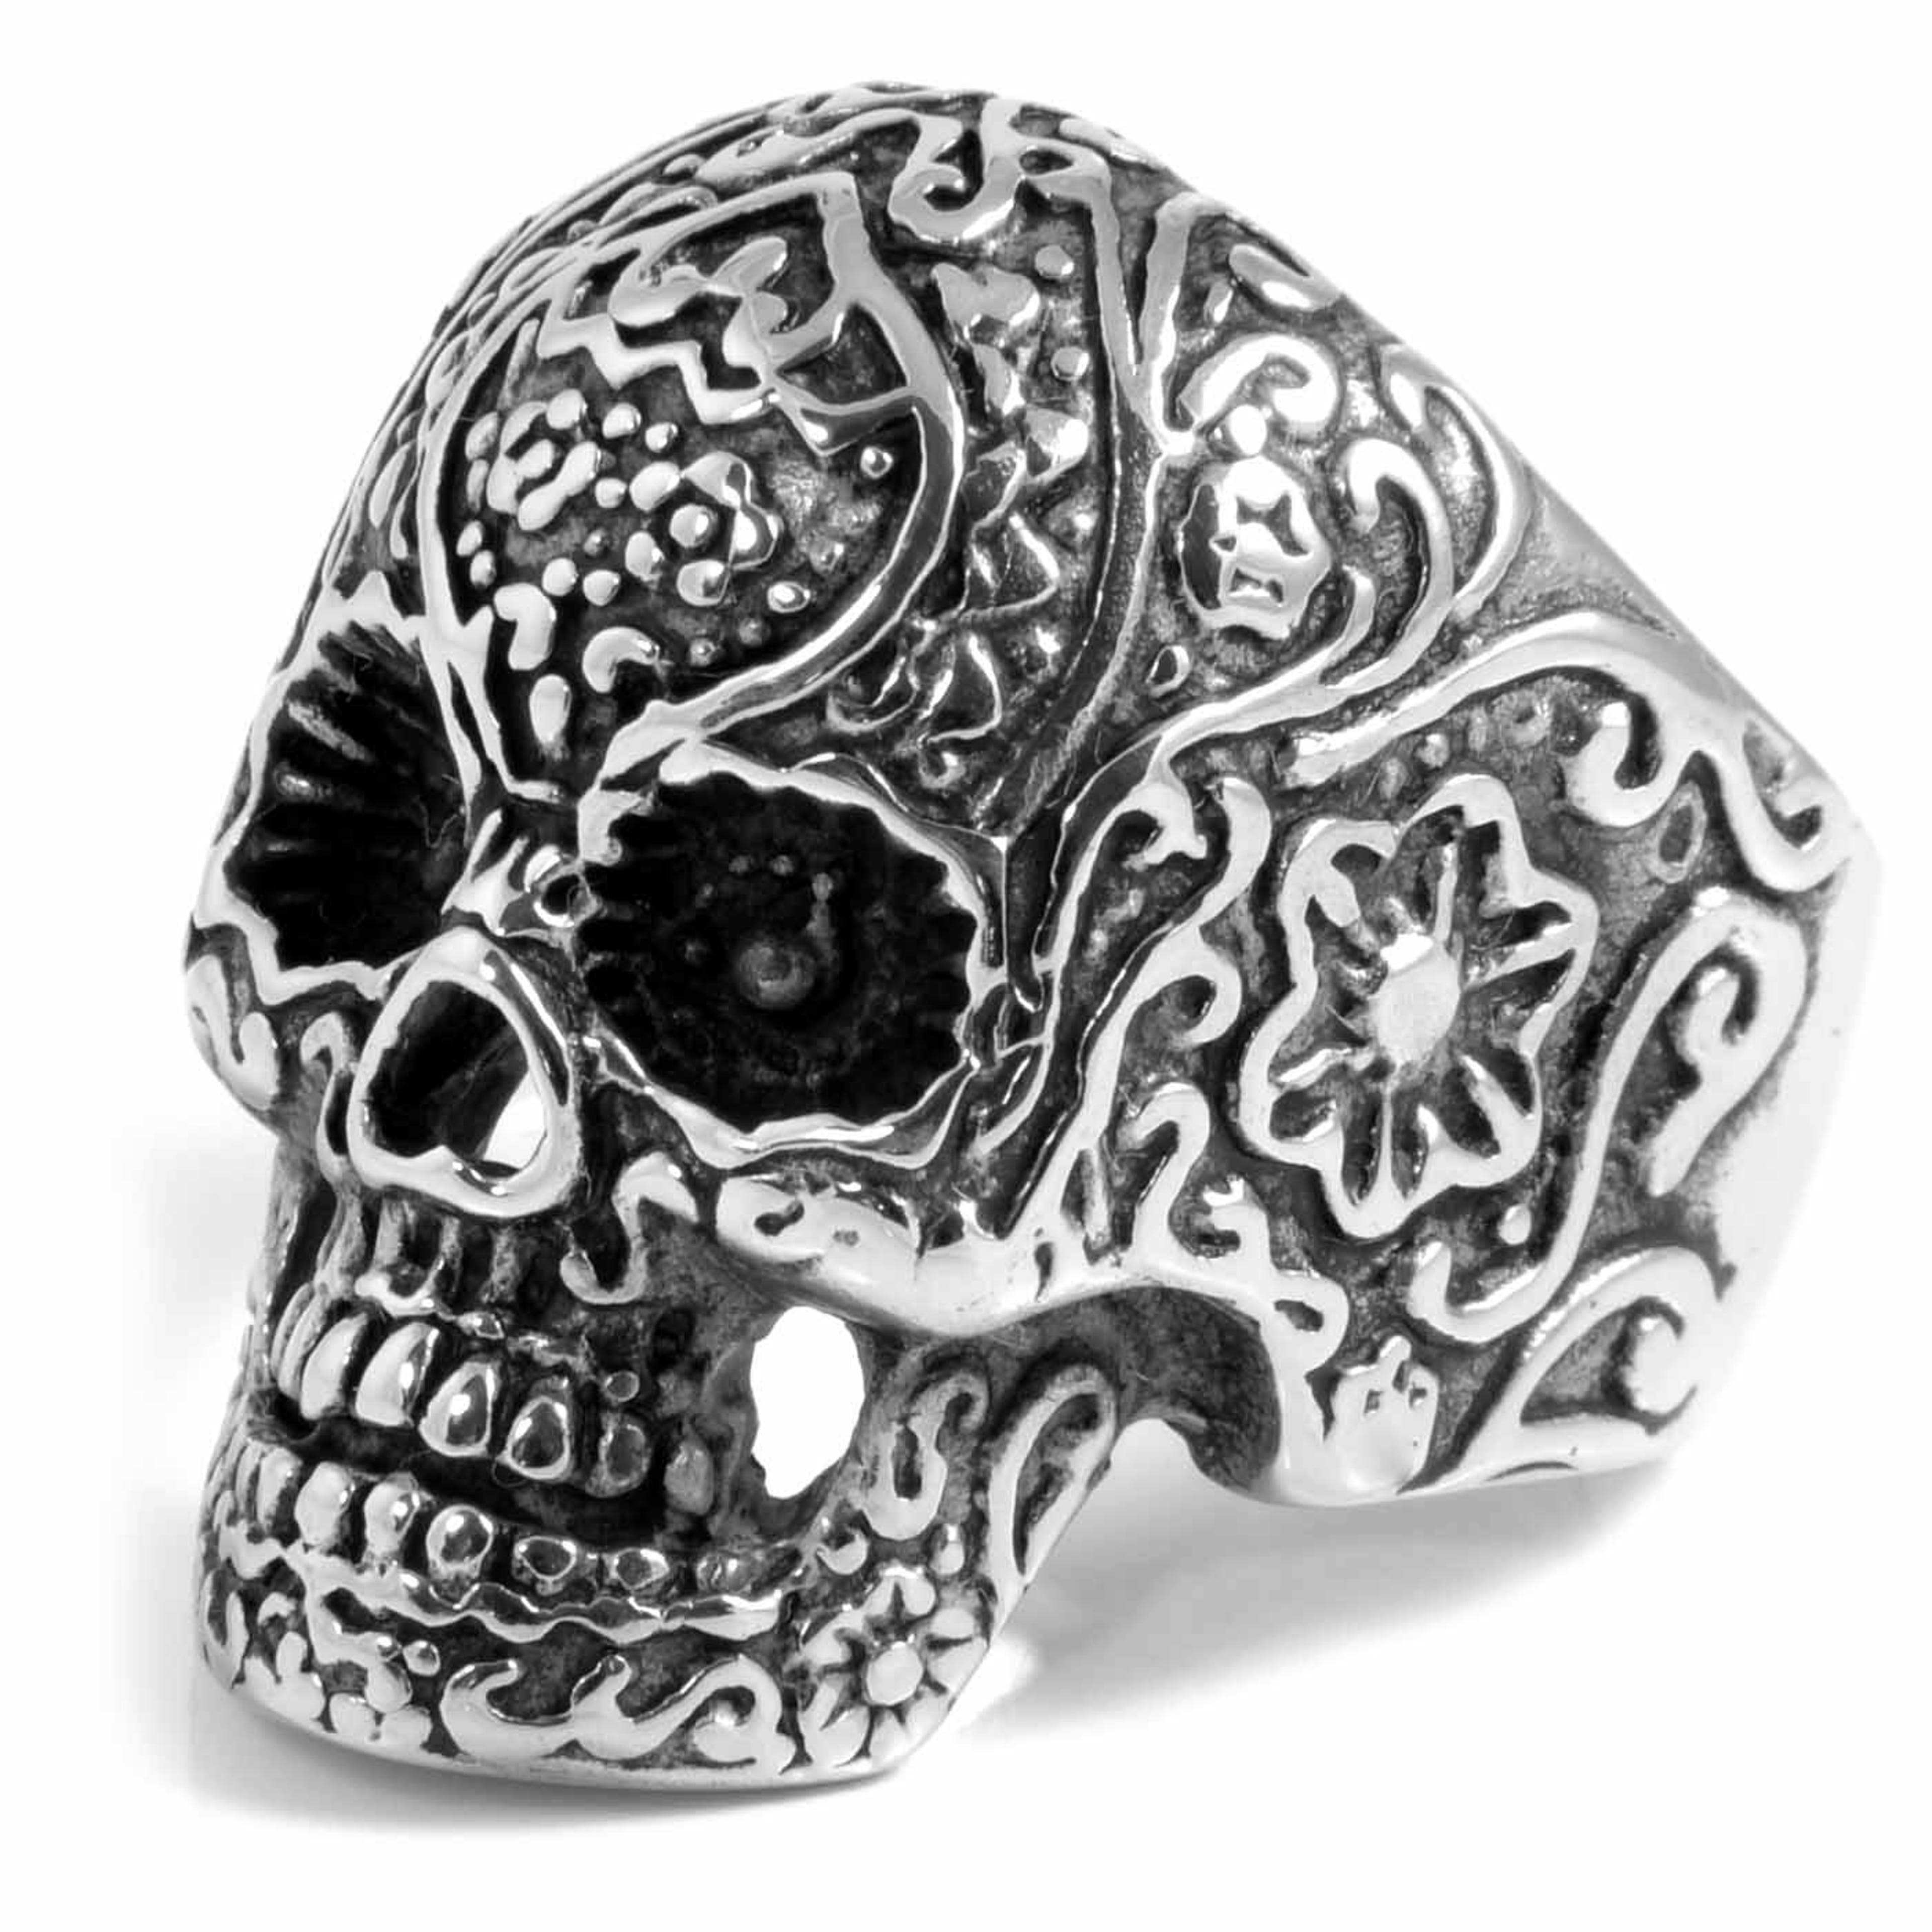 Silver-Tone Stainless Steel Detailed Skeleton Skull Ring